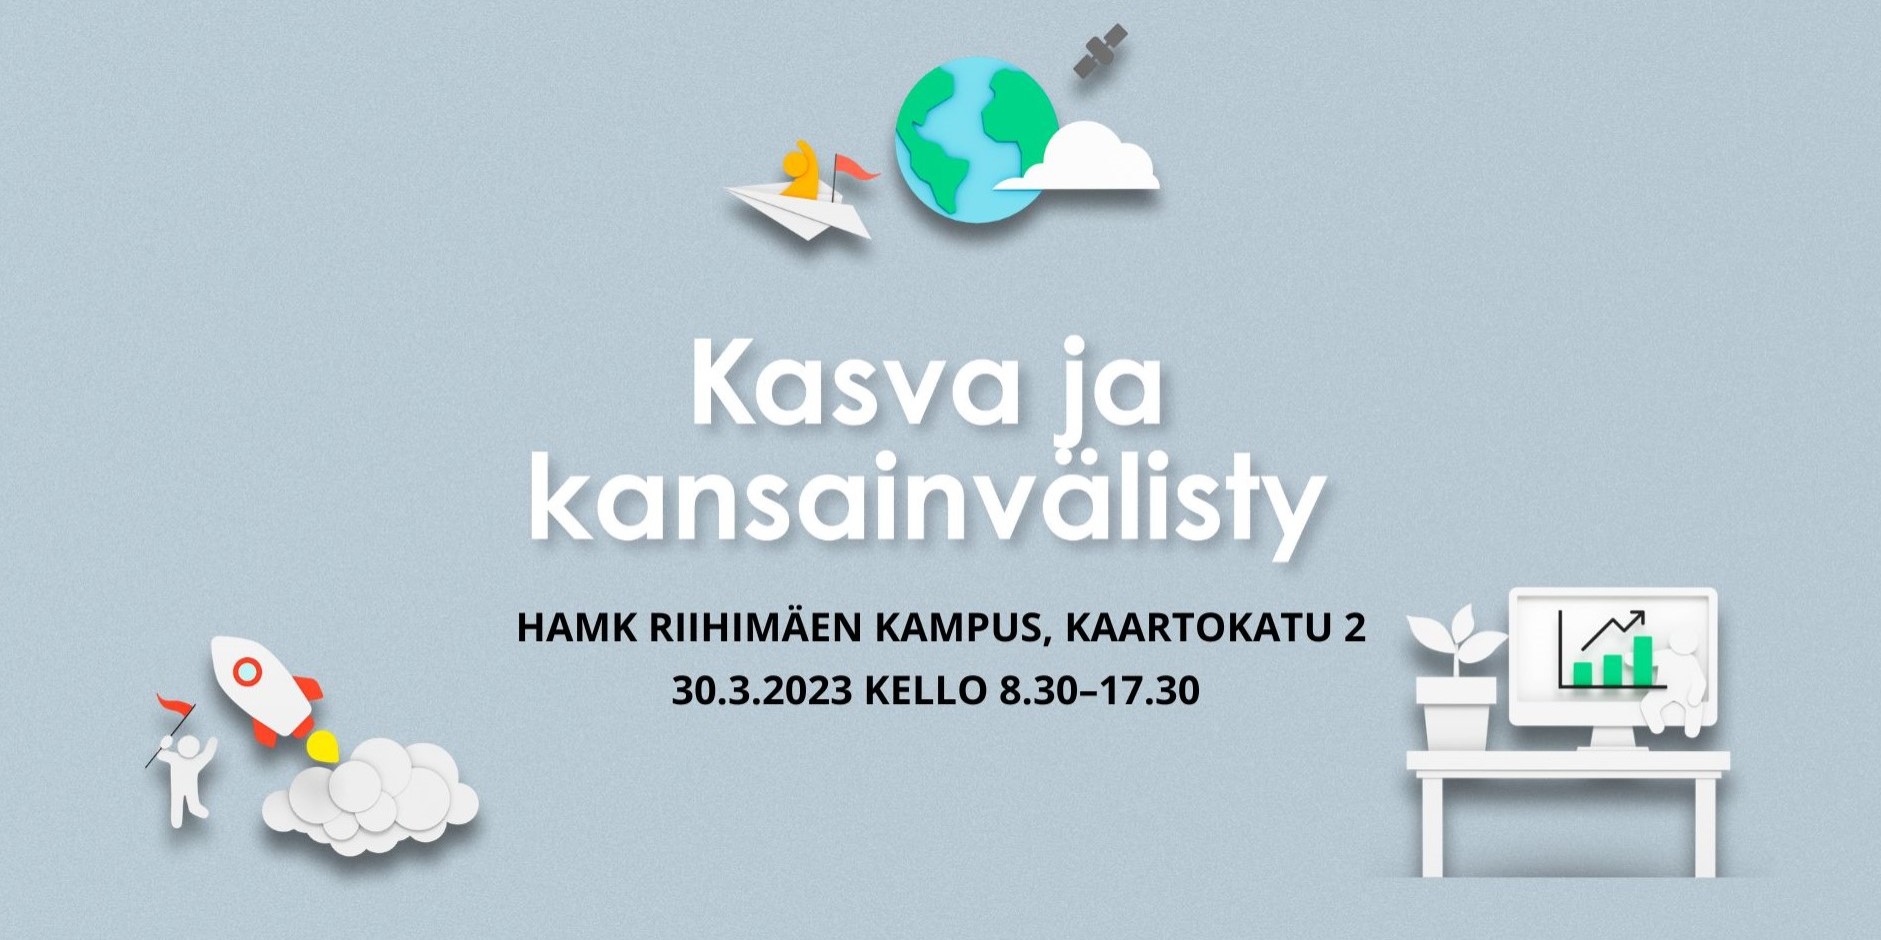 Kasva ja kansainvälisty -tapahtuma 30.3.2023 Riihimäellä osoitteessa Kaartokatu 2.